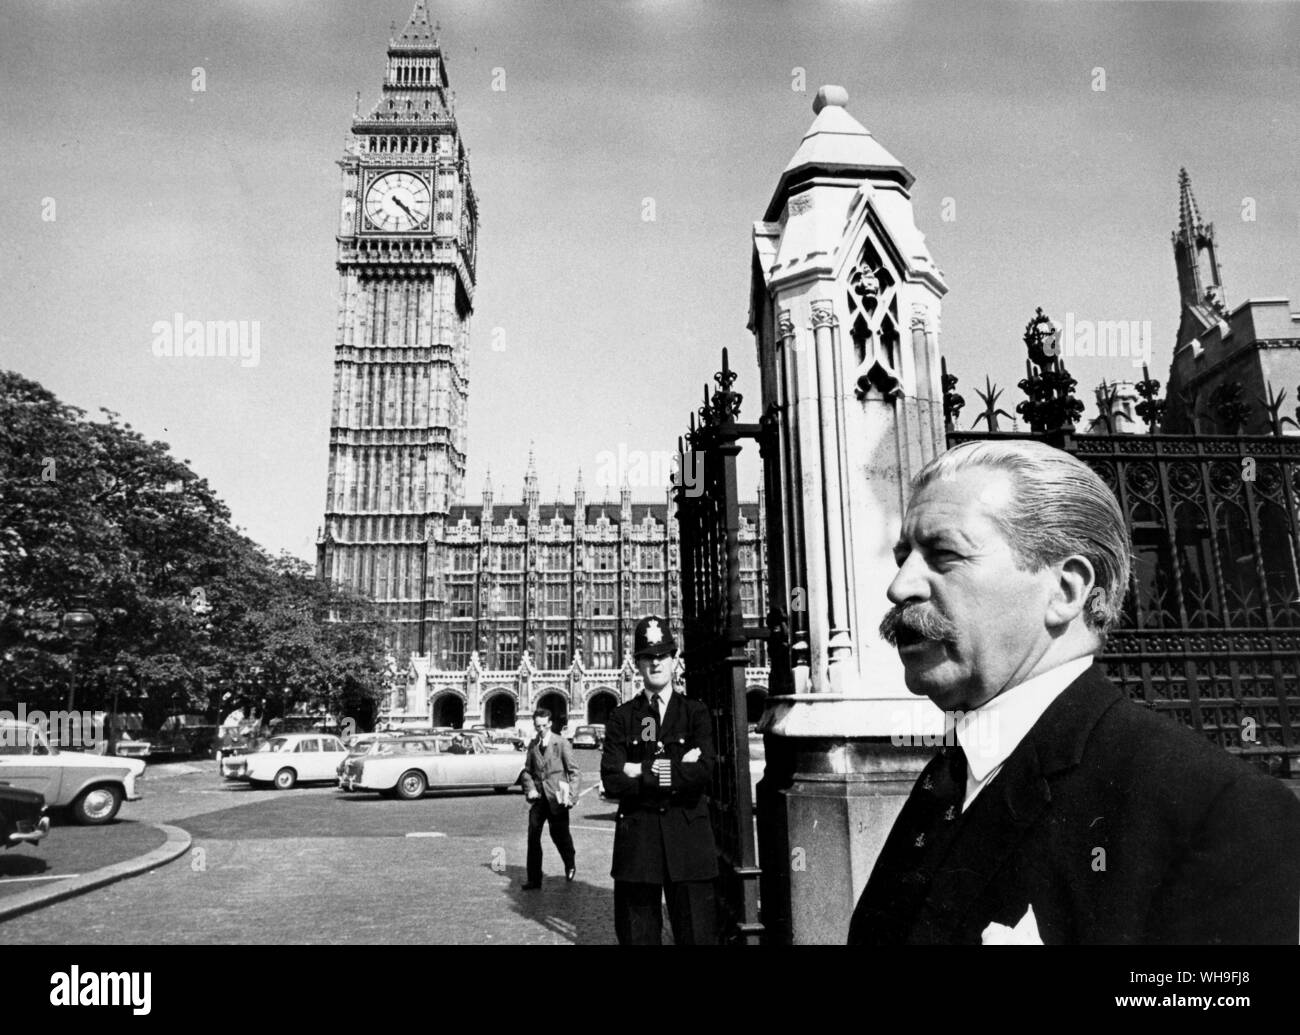 Juni 1967: Colonel Leslie Lohan, bekannt als Sammy, dargestellt in Westminster. Stockfoto